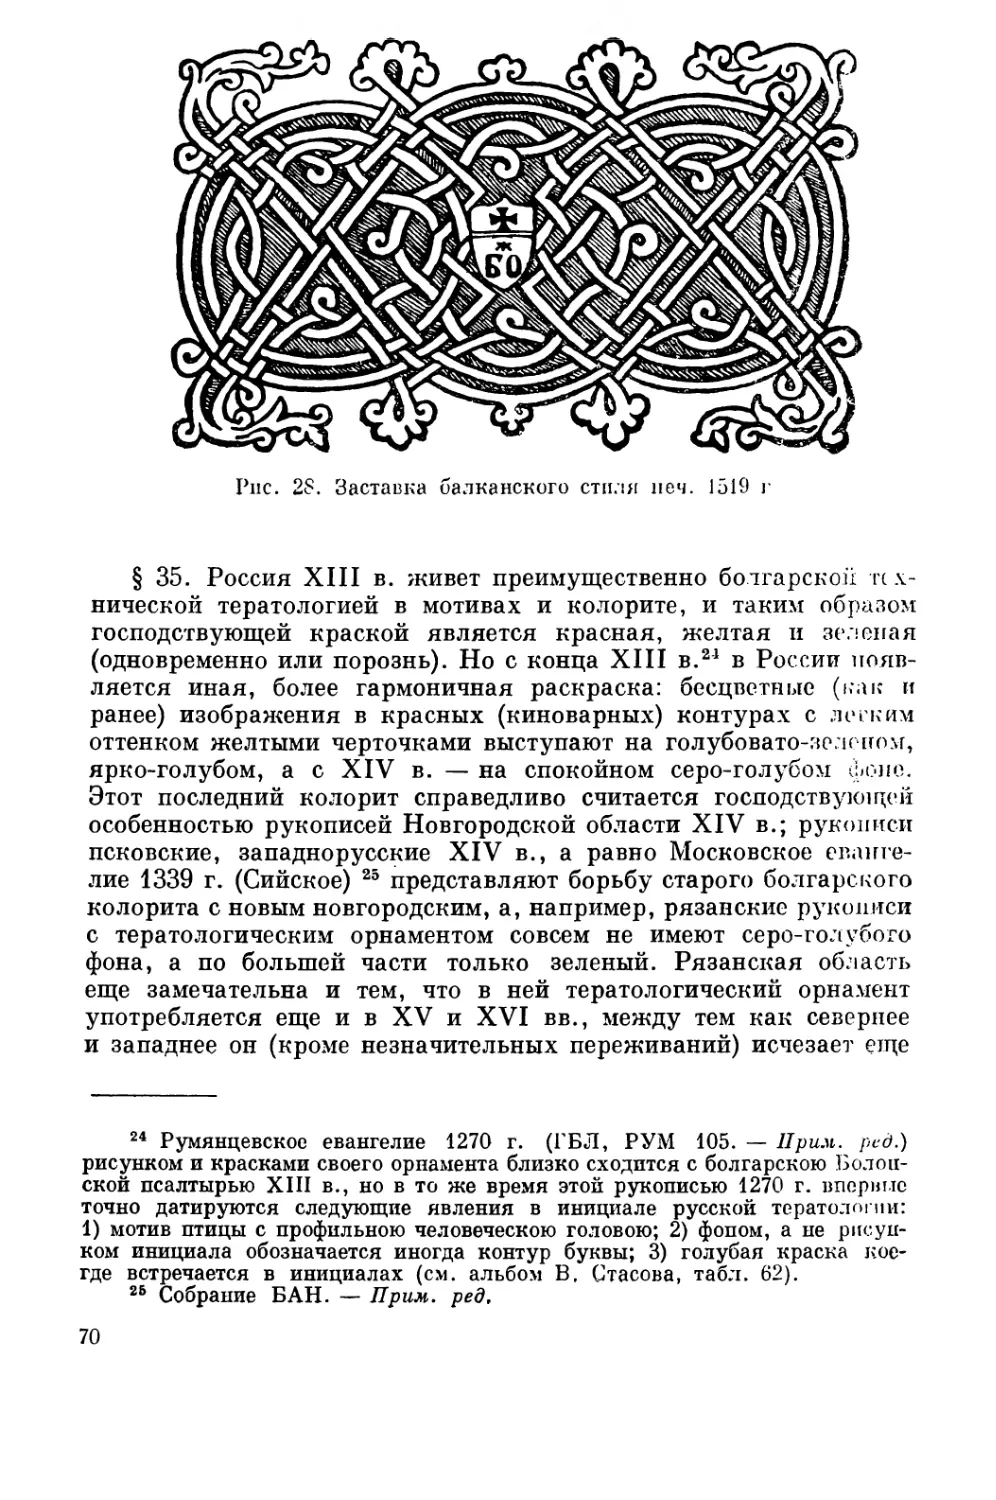 Тератология в России. Отличительные черты XIII и XIV вв